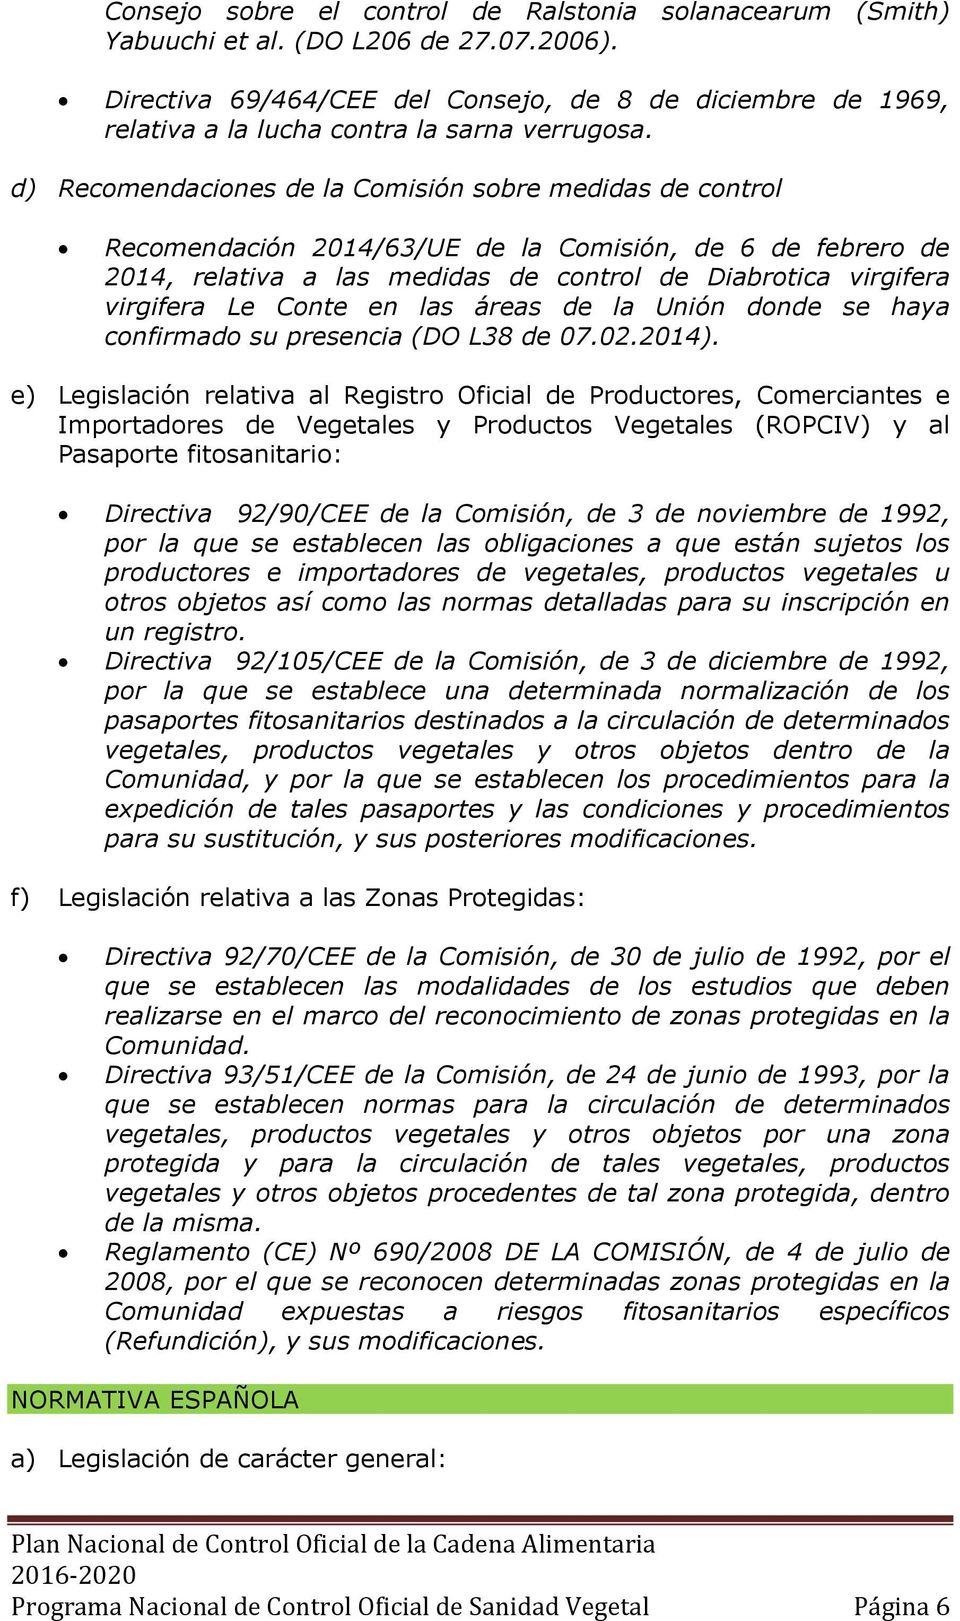 d) Recomendaciones de la Comisión sobre medidas de control Recomendación 2014/63/UE de la Comisión, de 6 de febrero de 2014, relativa a las medidas de control de Diabrotica virgifera virgifera Le